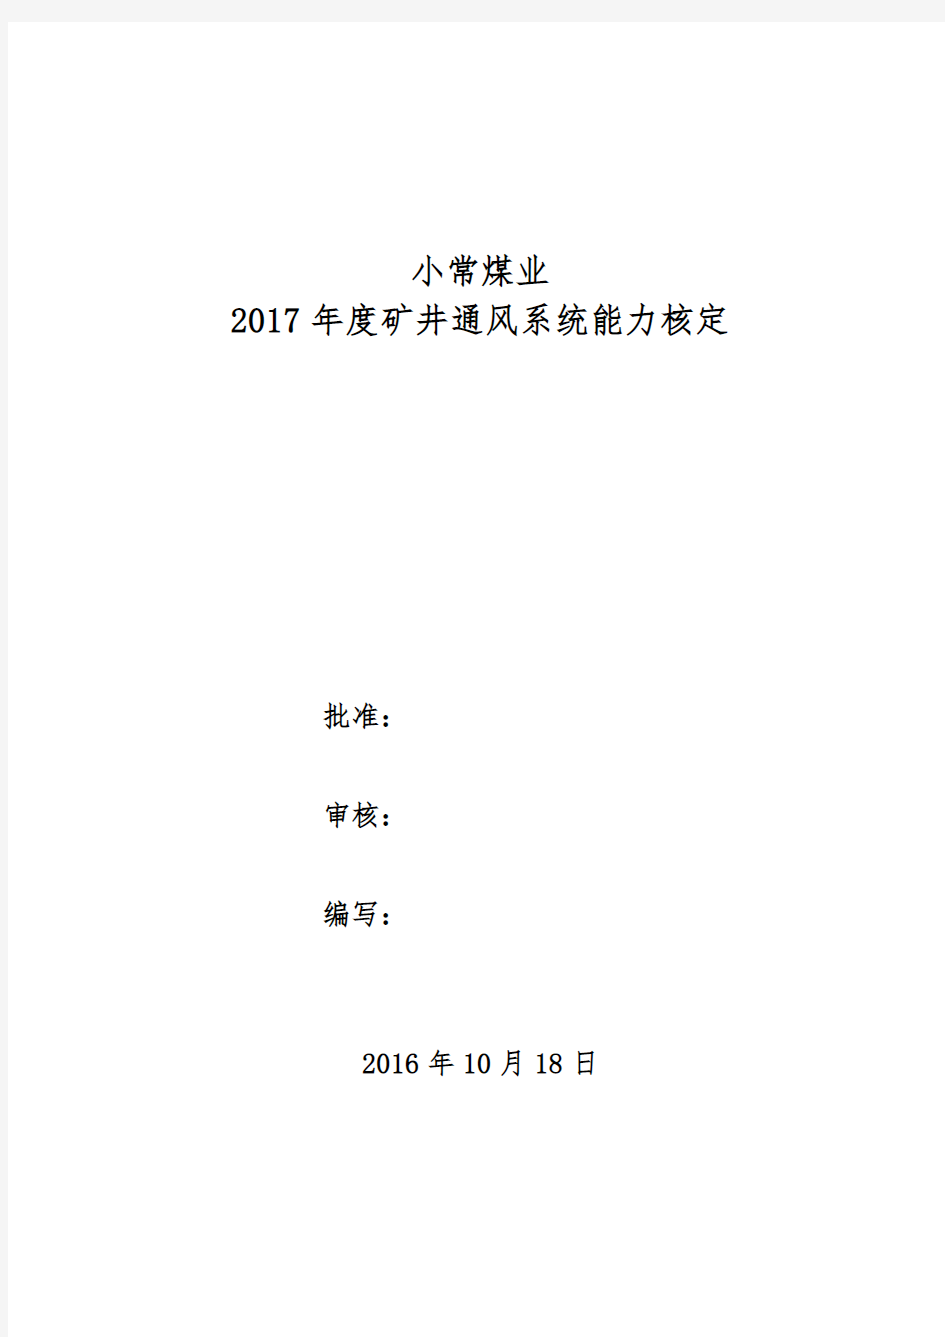 2017年度矿井通风能力核定报告(2003版)